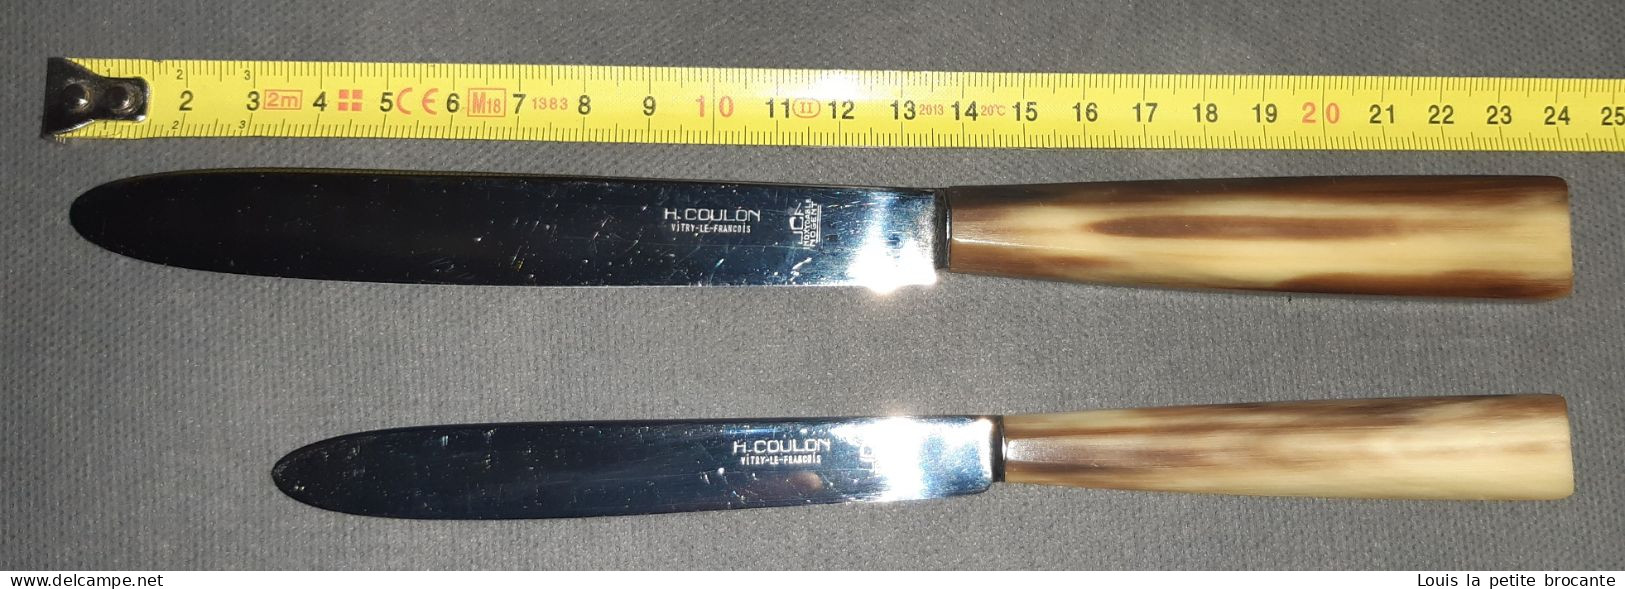 24 couteaux NOGENT UCF Inox, en vente aux établissement A. COULON à Vitry le François. Années 50. Lame inox